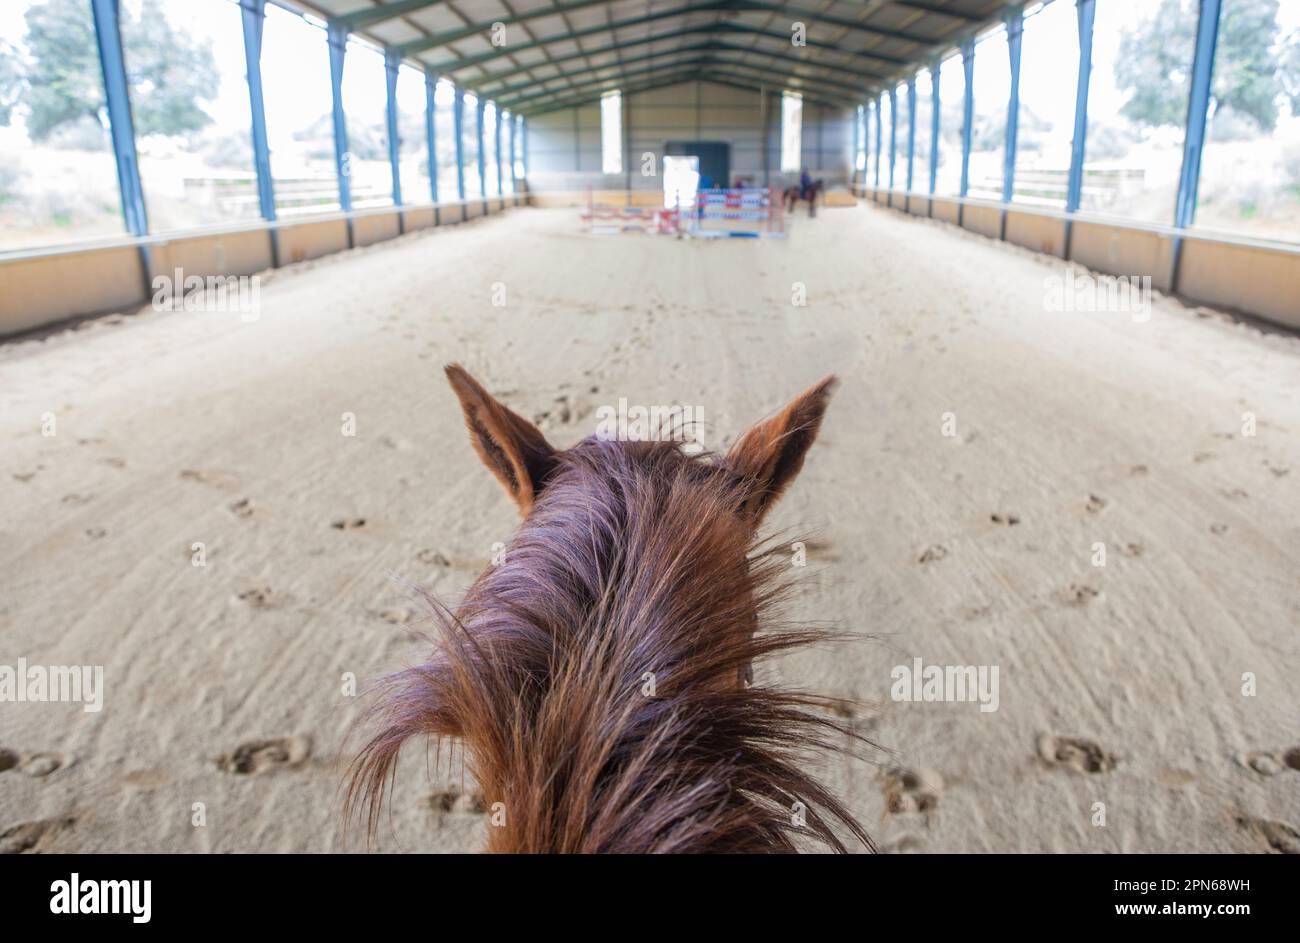 Pferdetraining auf dem Hindernisparcours. Szene vom Pferd aus gesehen Stockfoto